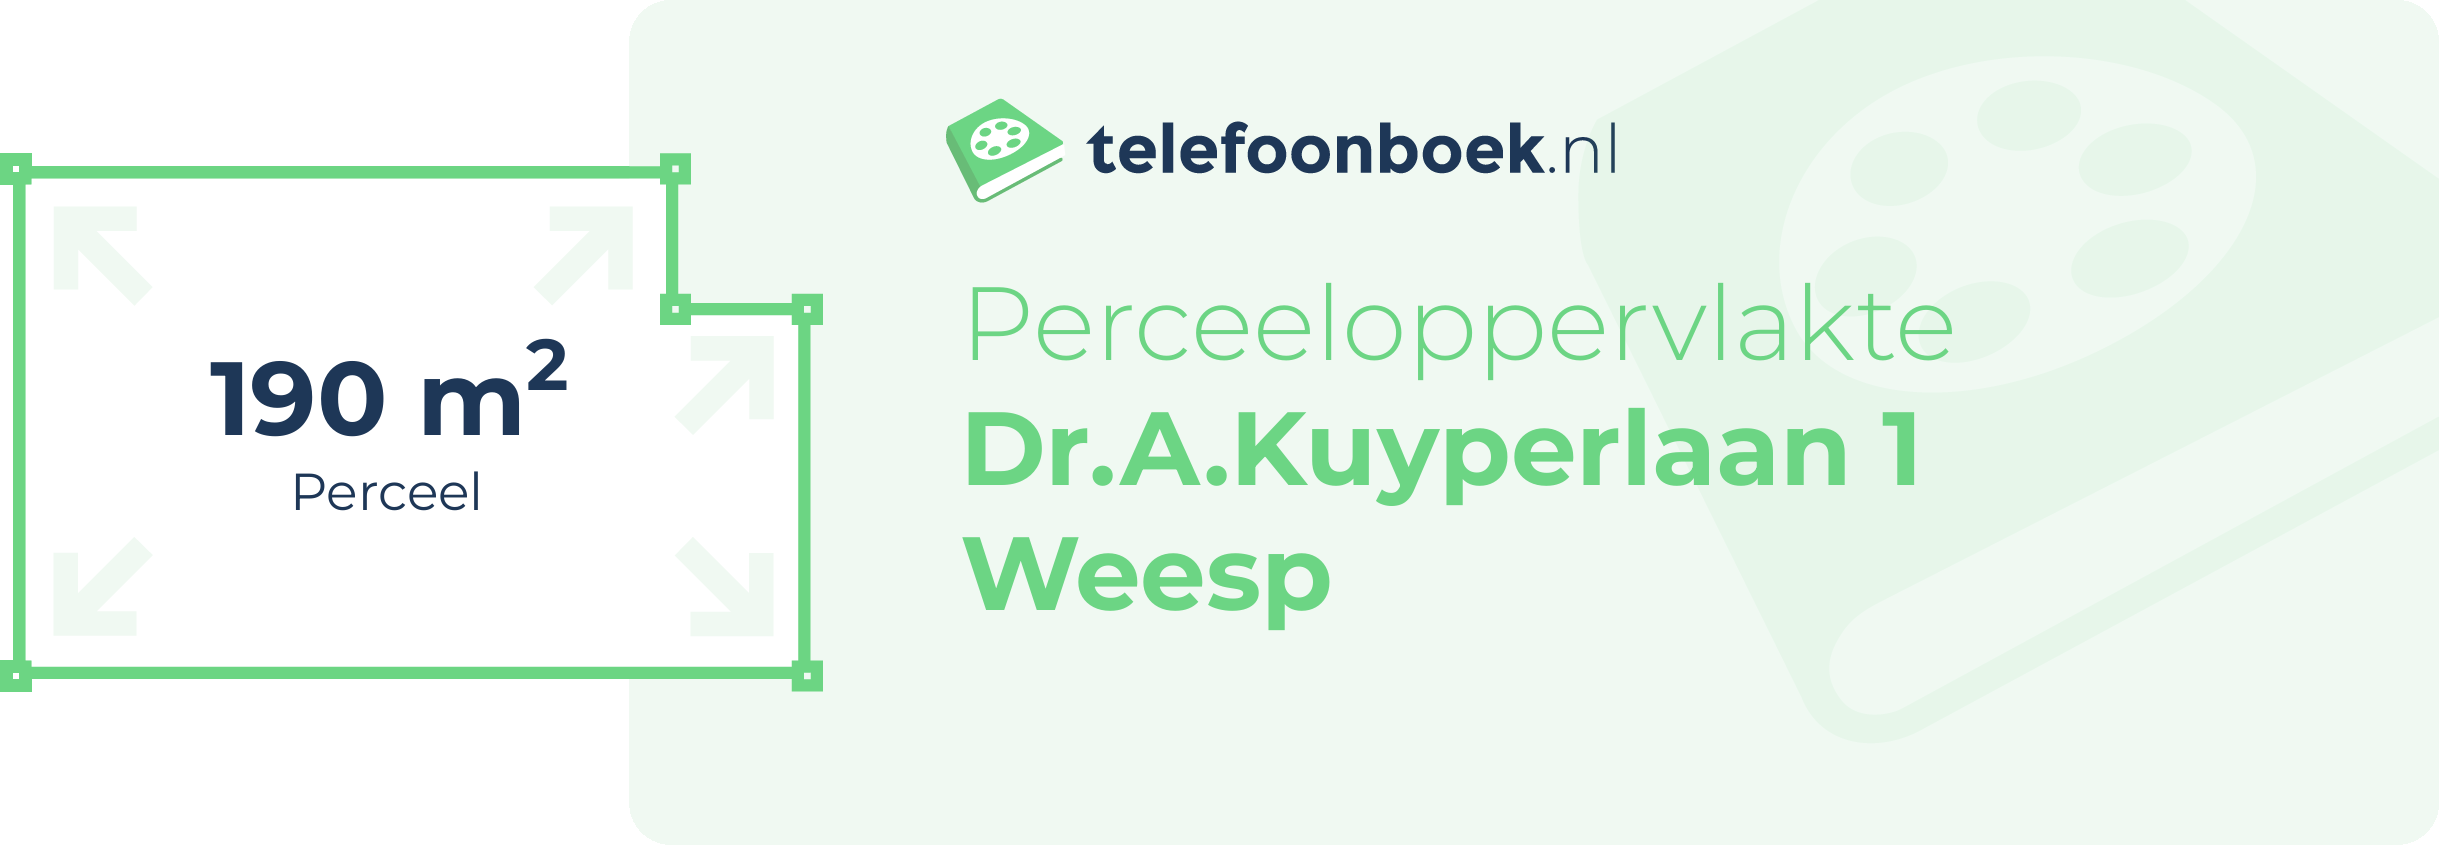 Perceeloppervlakte Dr.A.Kuyperlaan 1 Weesp